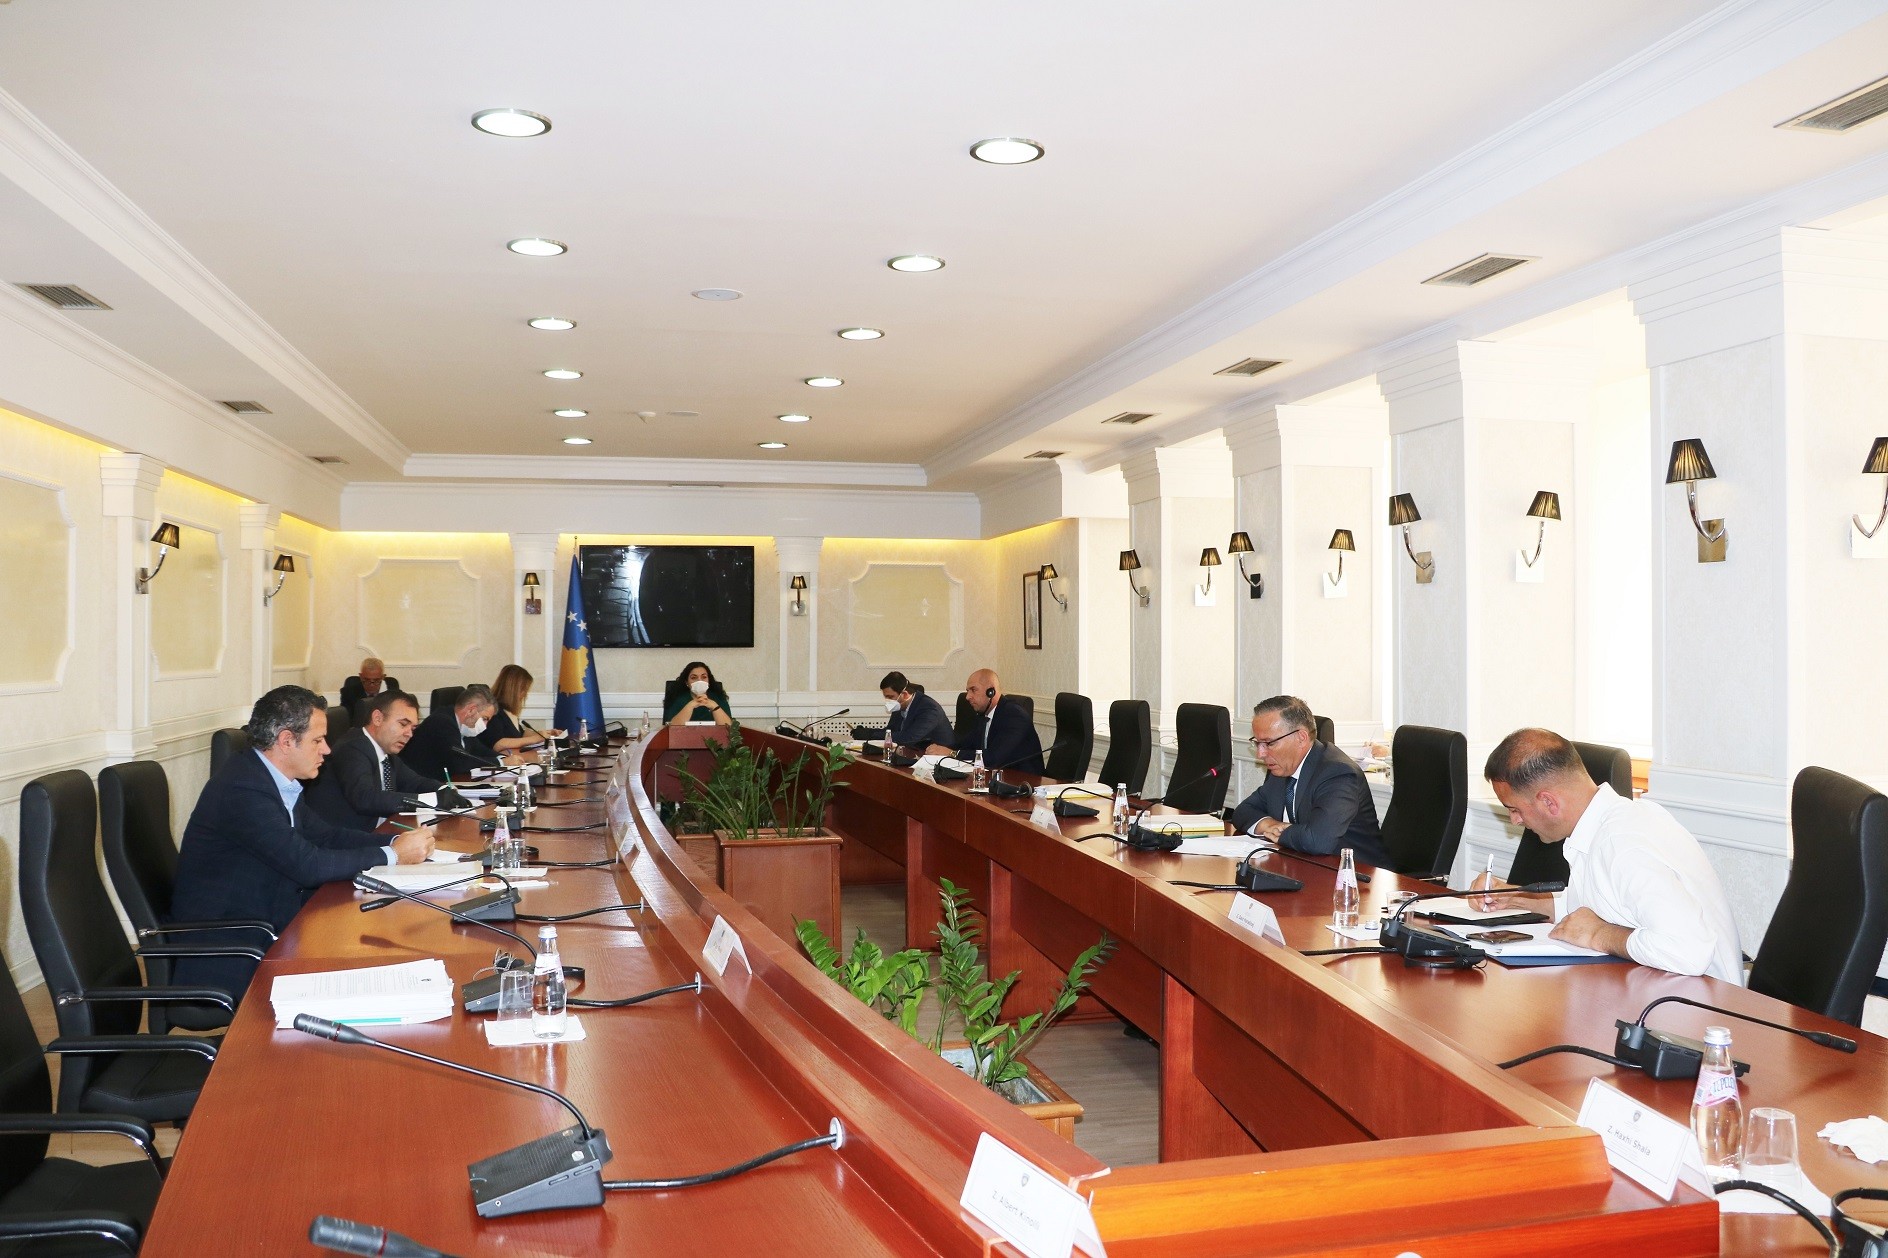 Seanca e radhës e Kuvendit të Kosovës të mbahet më 4 qershor